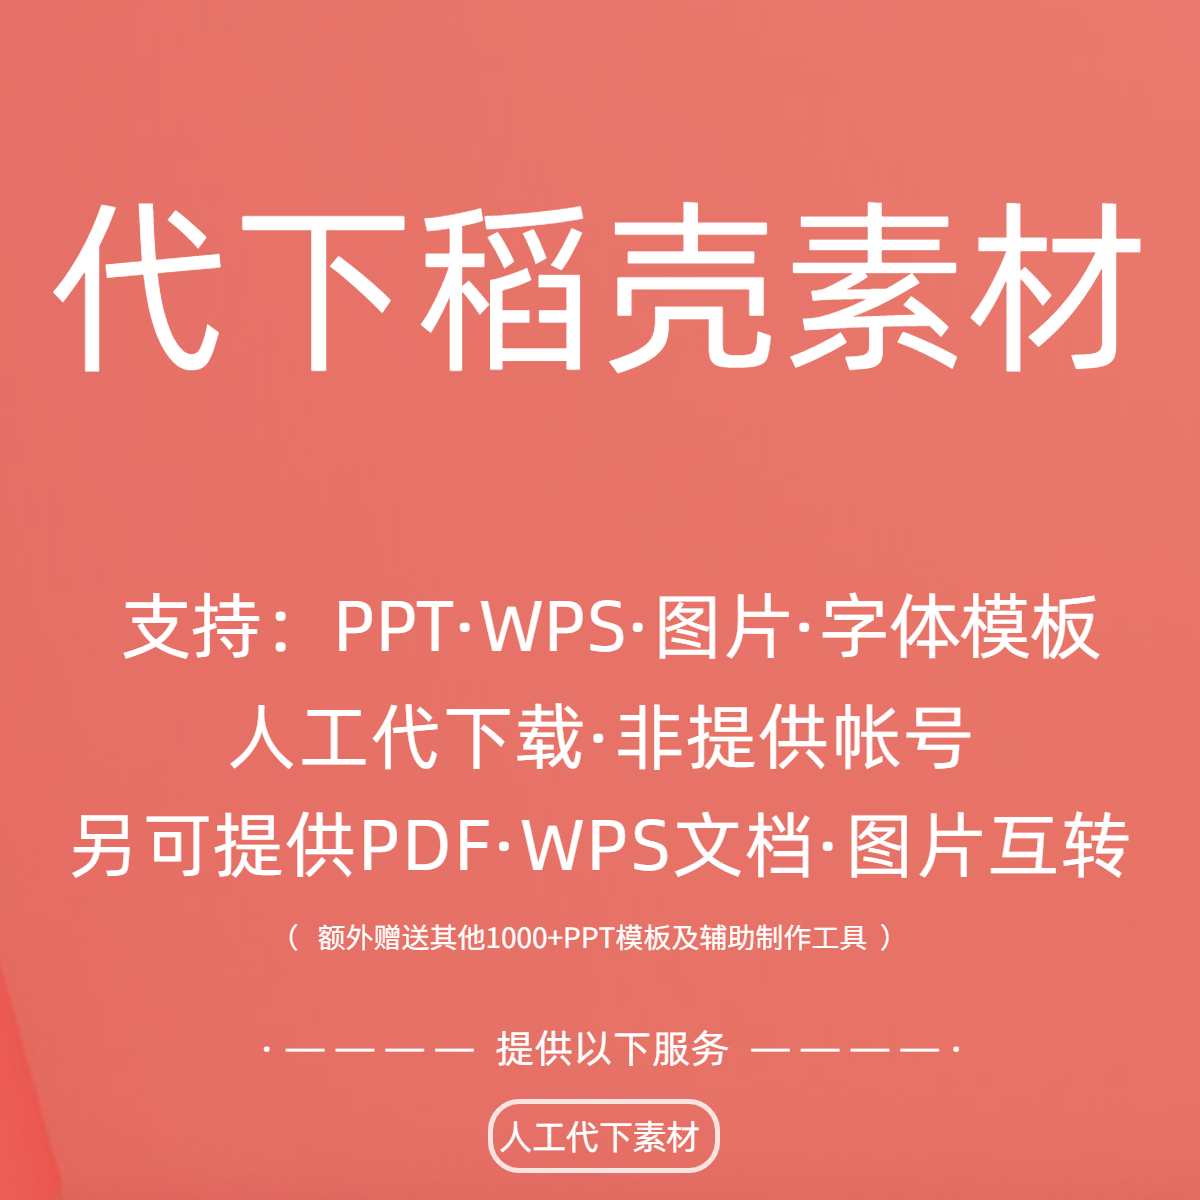 稻壳WPS会员素材PPT模板课件简历表格Word文库代下载 送素材模板